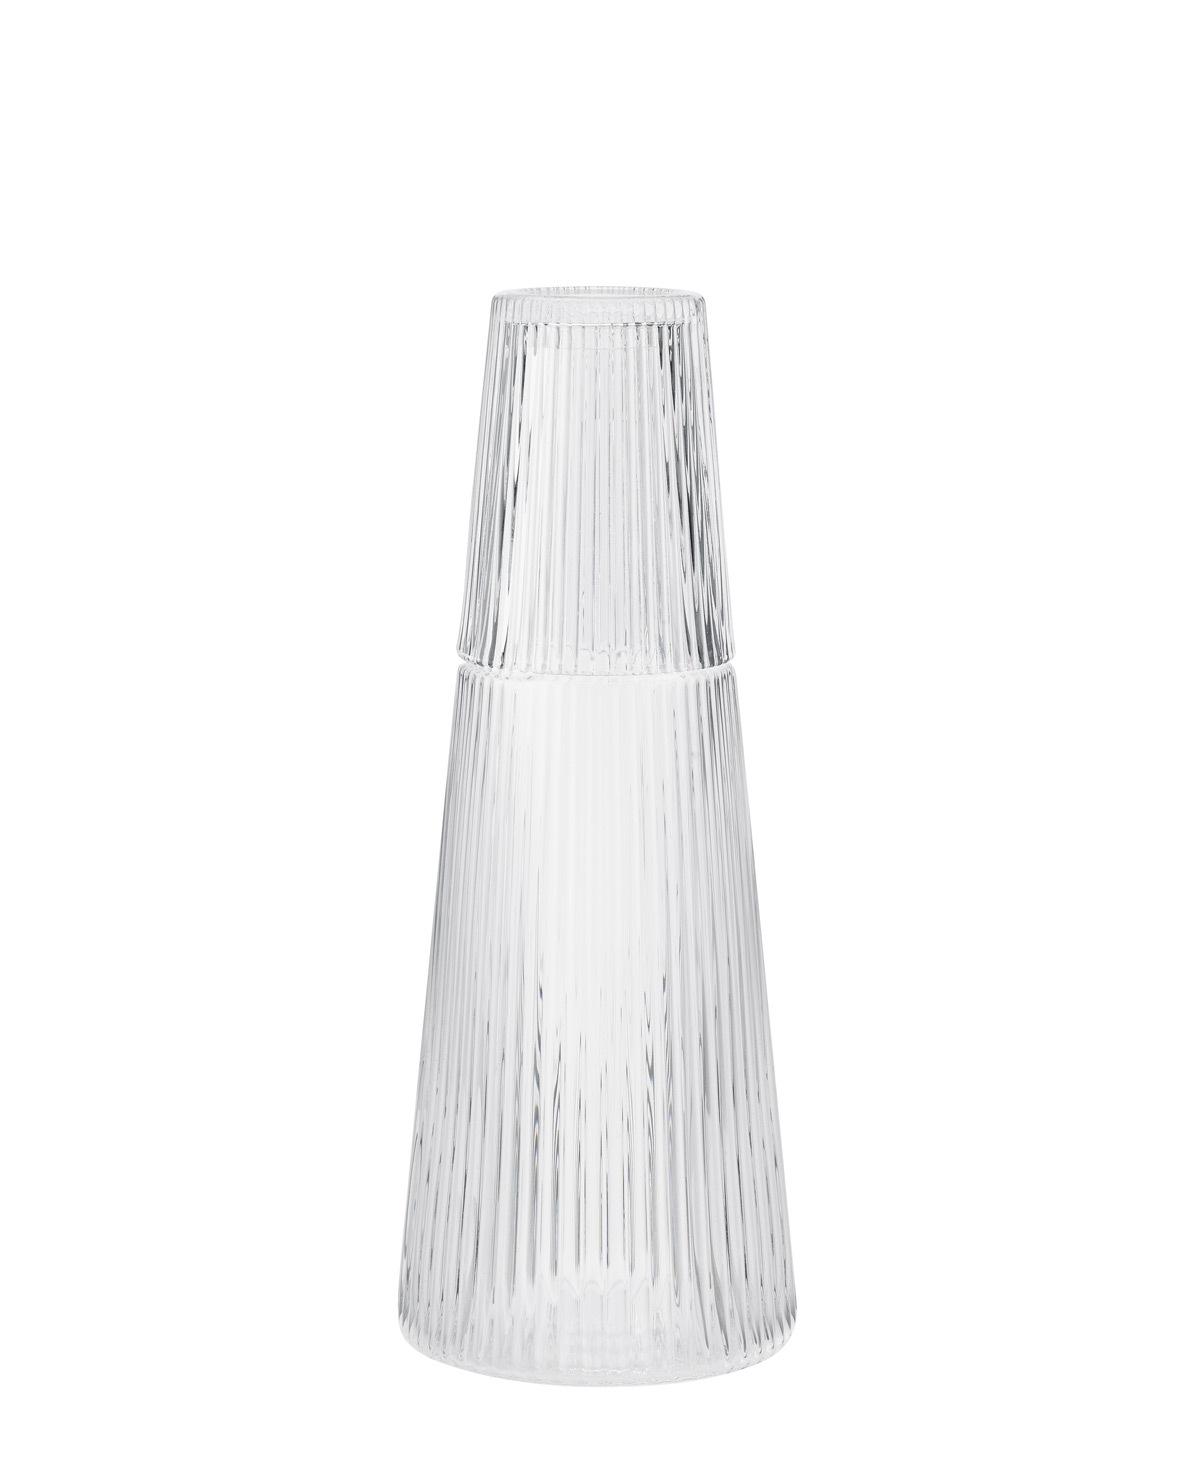 Stelton Karaffe Pilastro Mit Glas, Wasserkaraffe, Glas, Transparent, 1 L, X-507